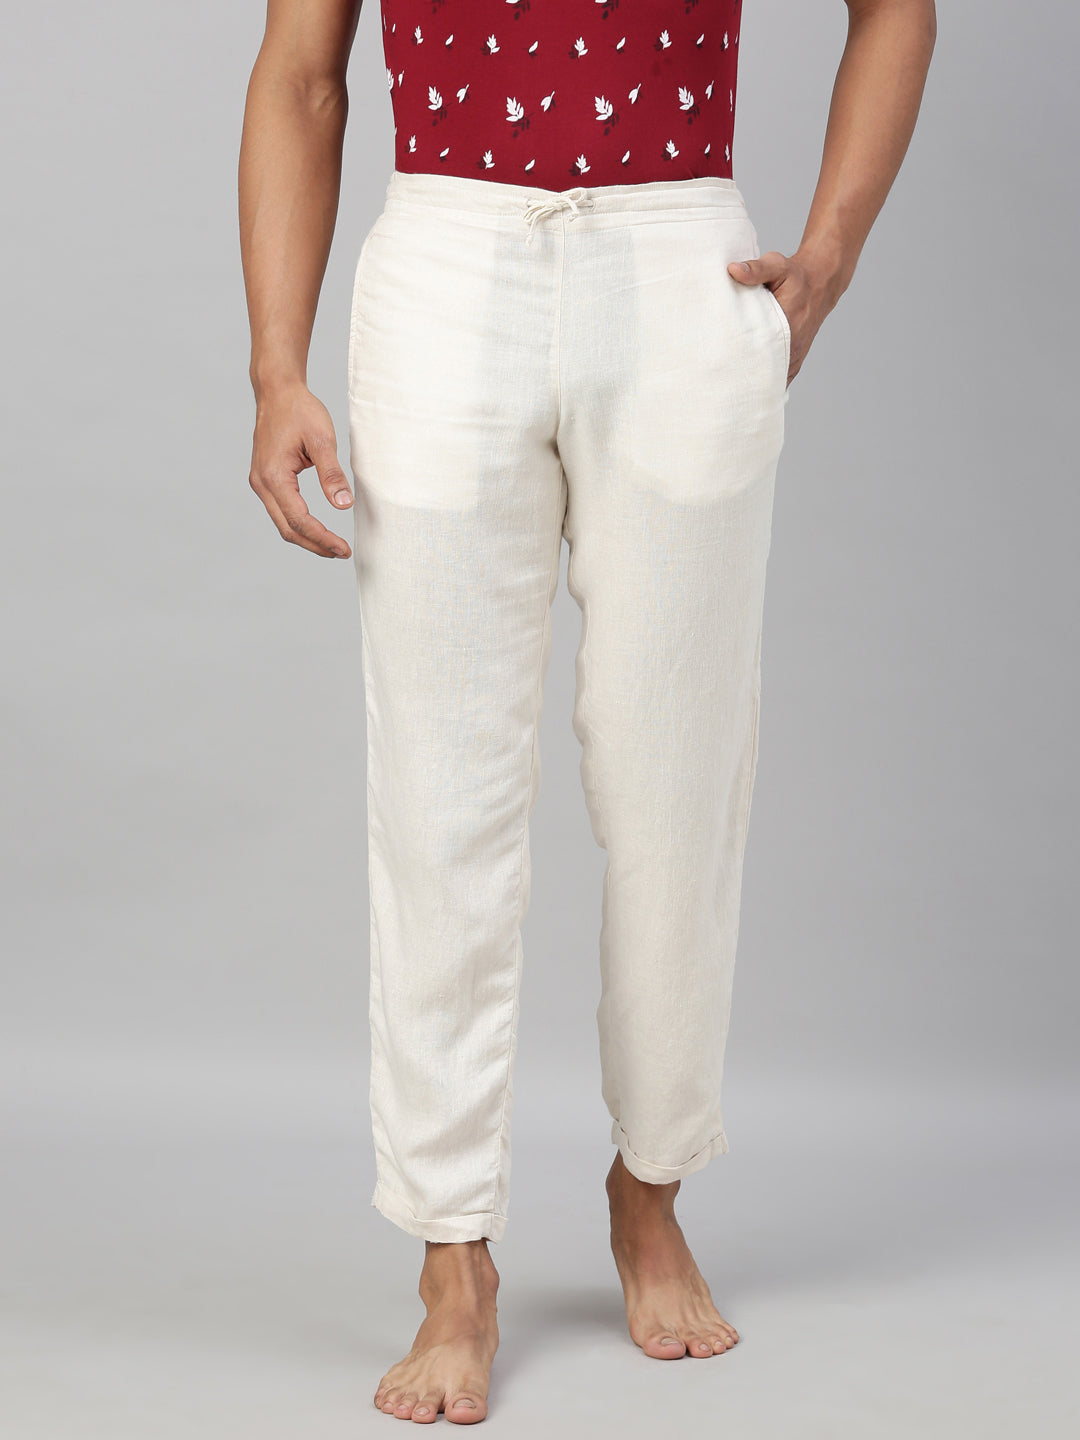 Navy Linen Blend Pants  Mens Casual Wear Slim Fit Linen Pants